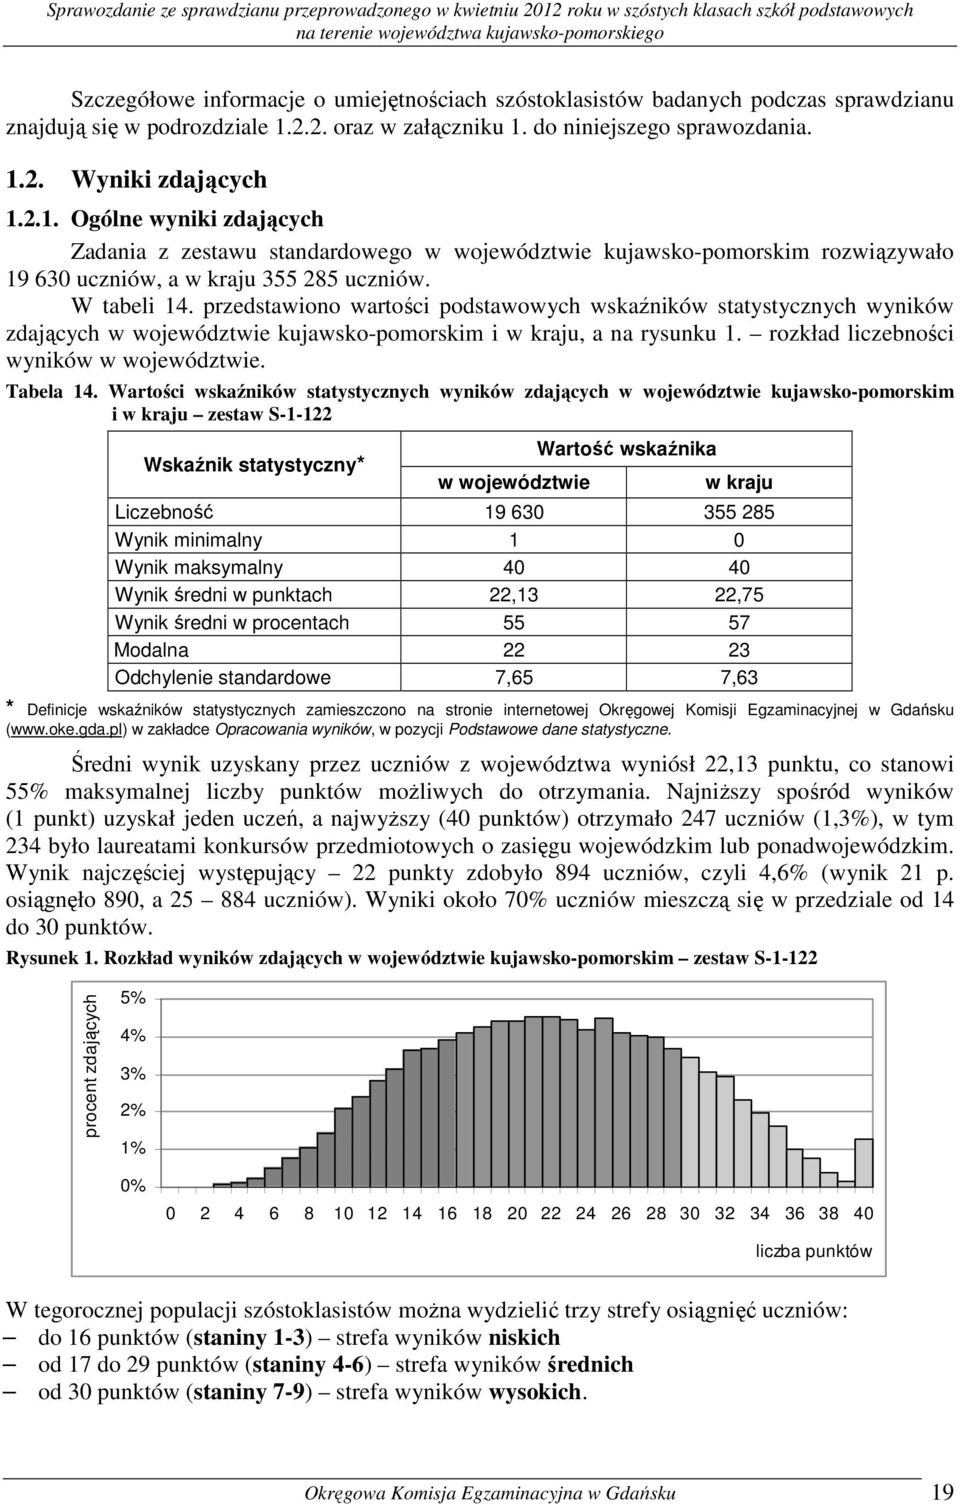 W tabeli 14. przedstawiono wartości podstawowych wskaźników statystycznych wyników zdających w województwie kujawsko-pomorskim i w kraju, a na rysunku 1. rozkład liczebności wyników w województwie.